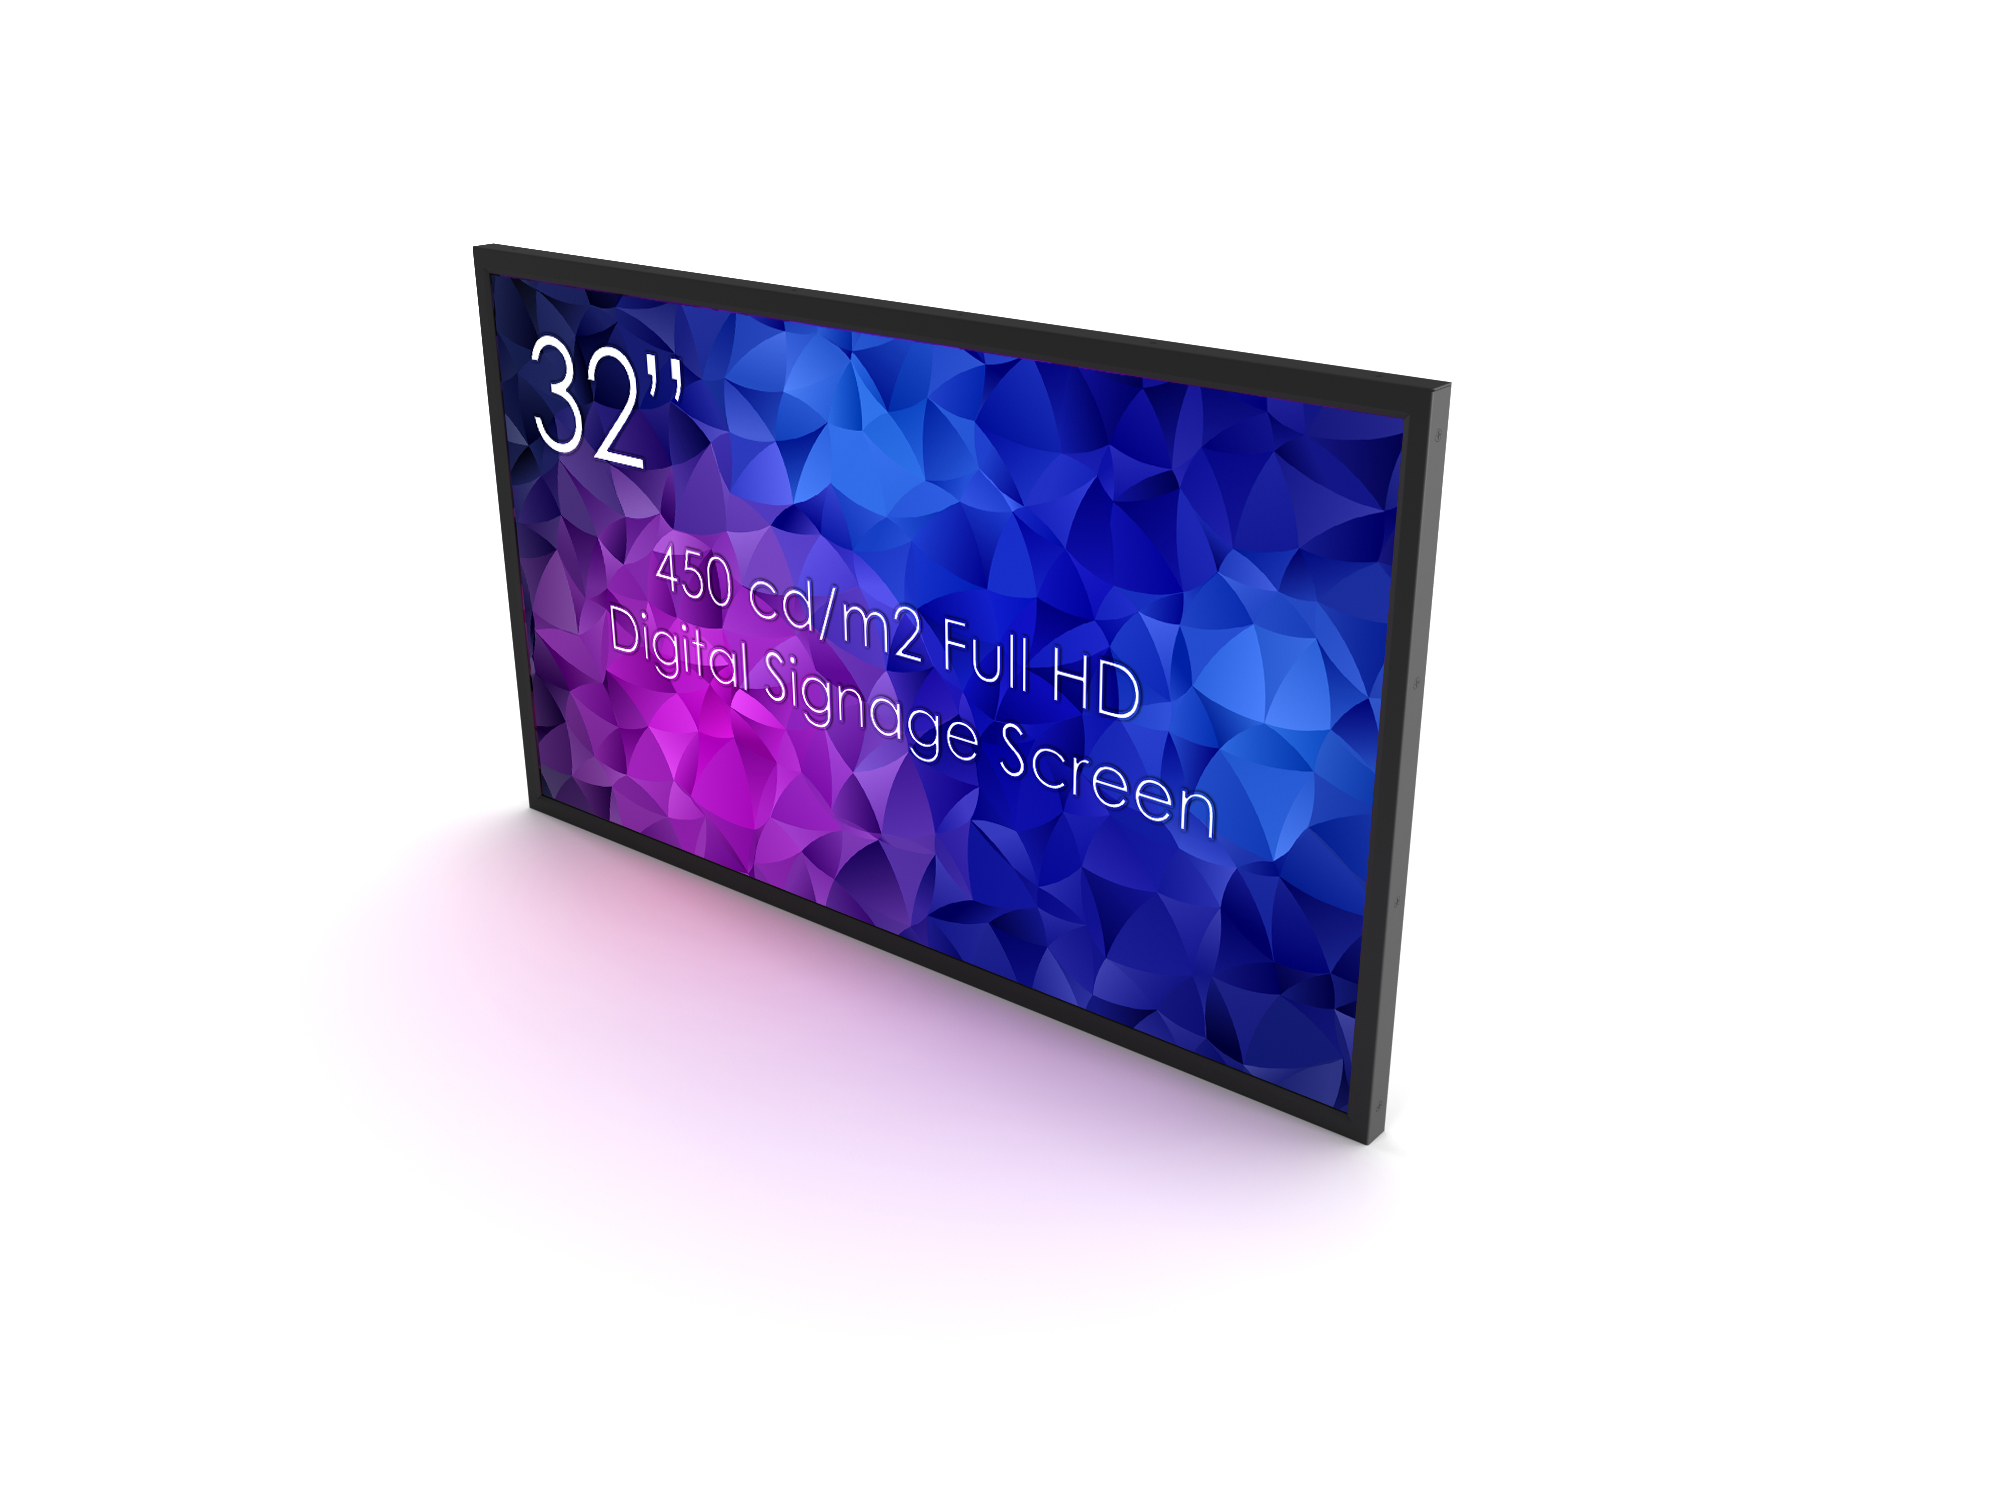 SWEDX 32\" Digital Signage screen / 450 cd/m2